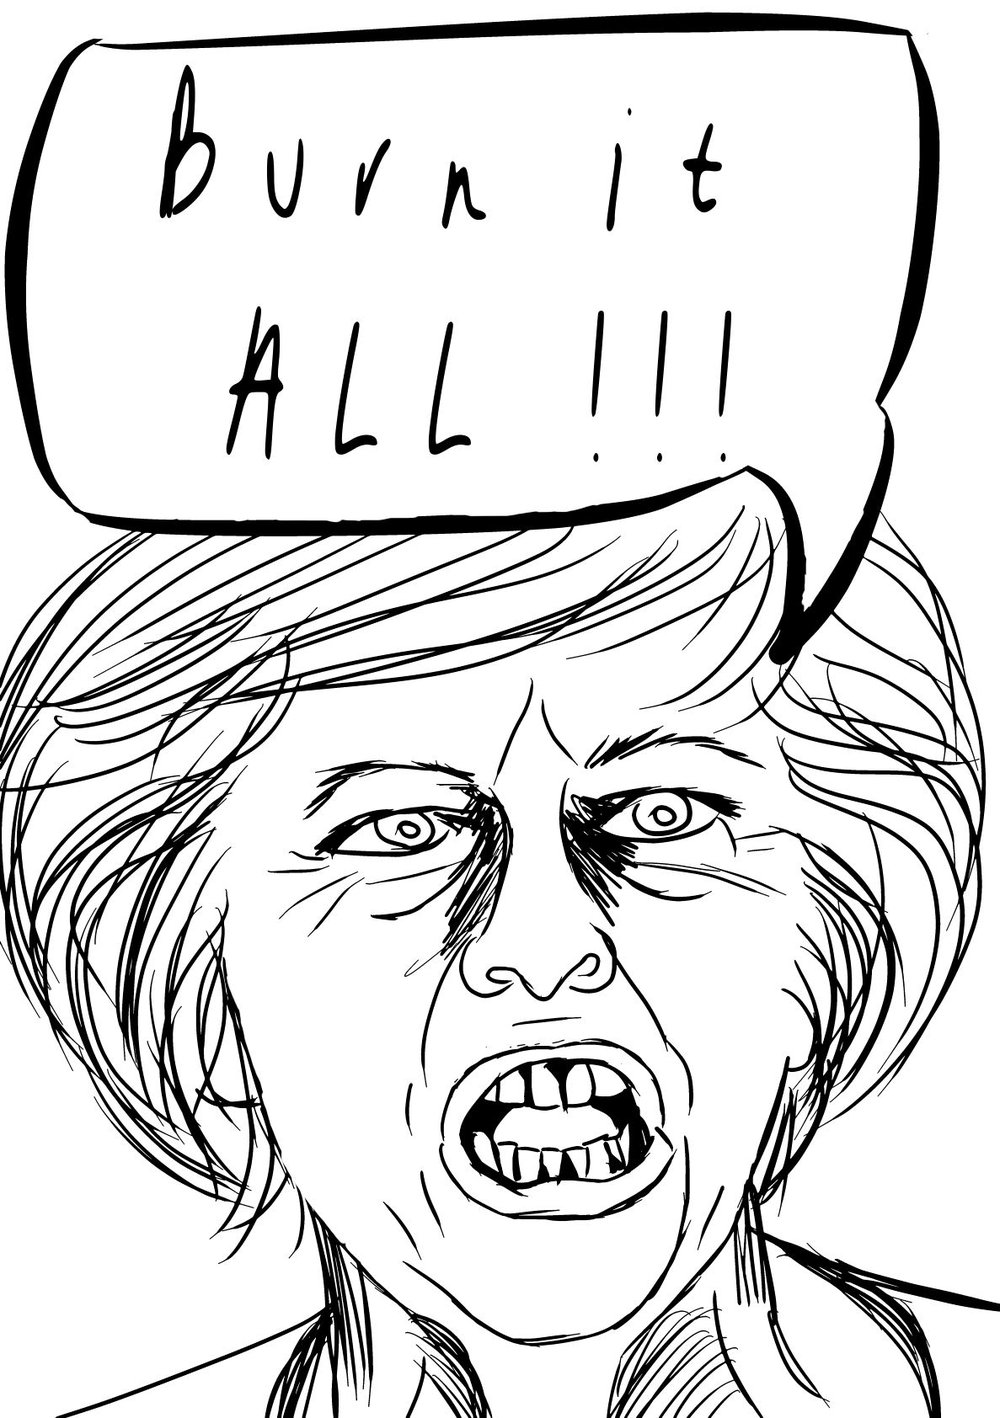 illustration of Margaret Thatcher saying "Let it Burn".jpg